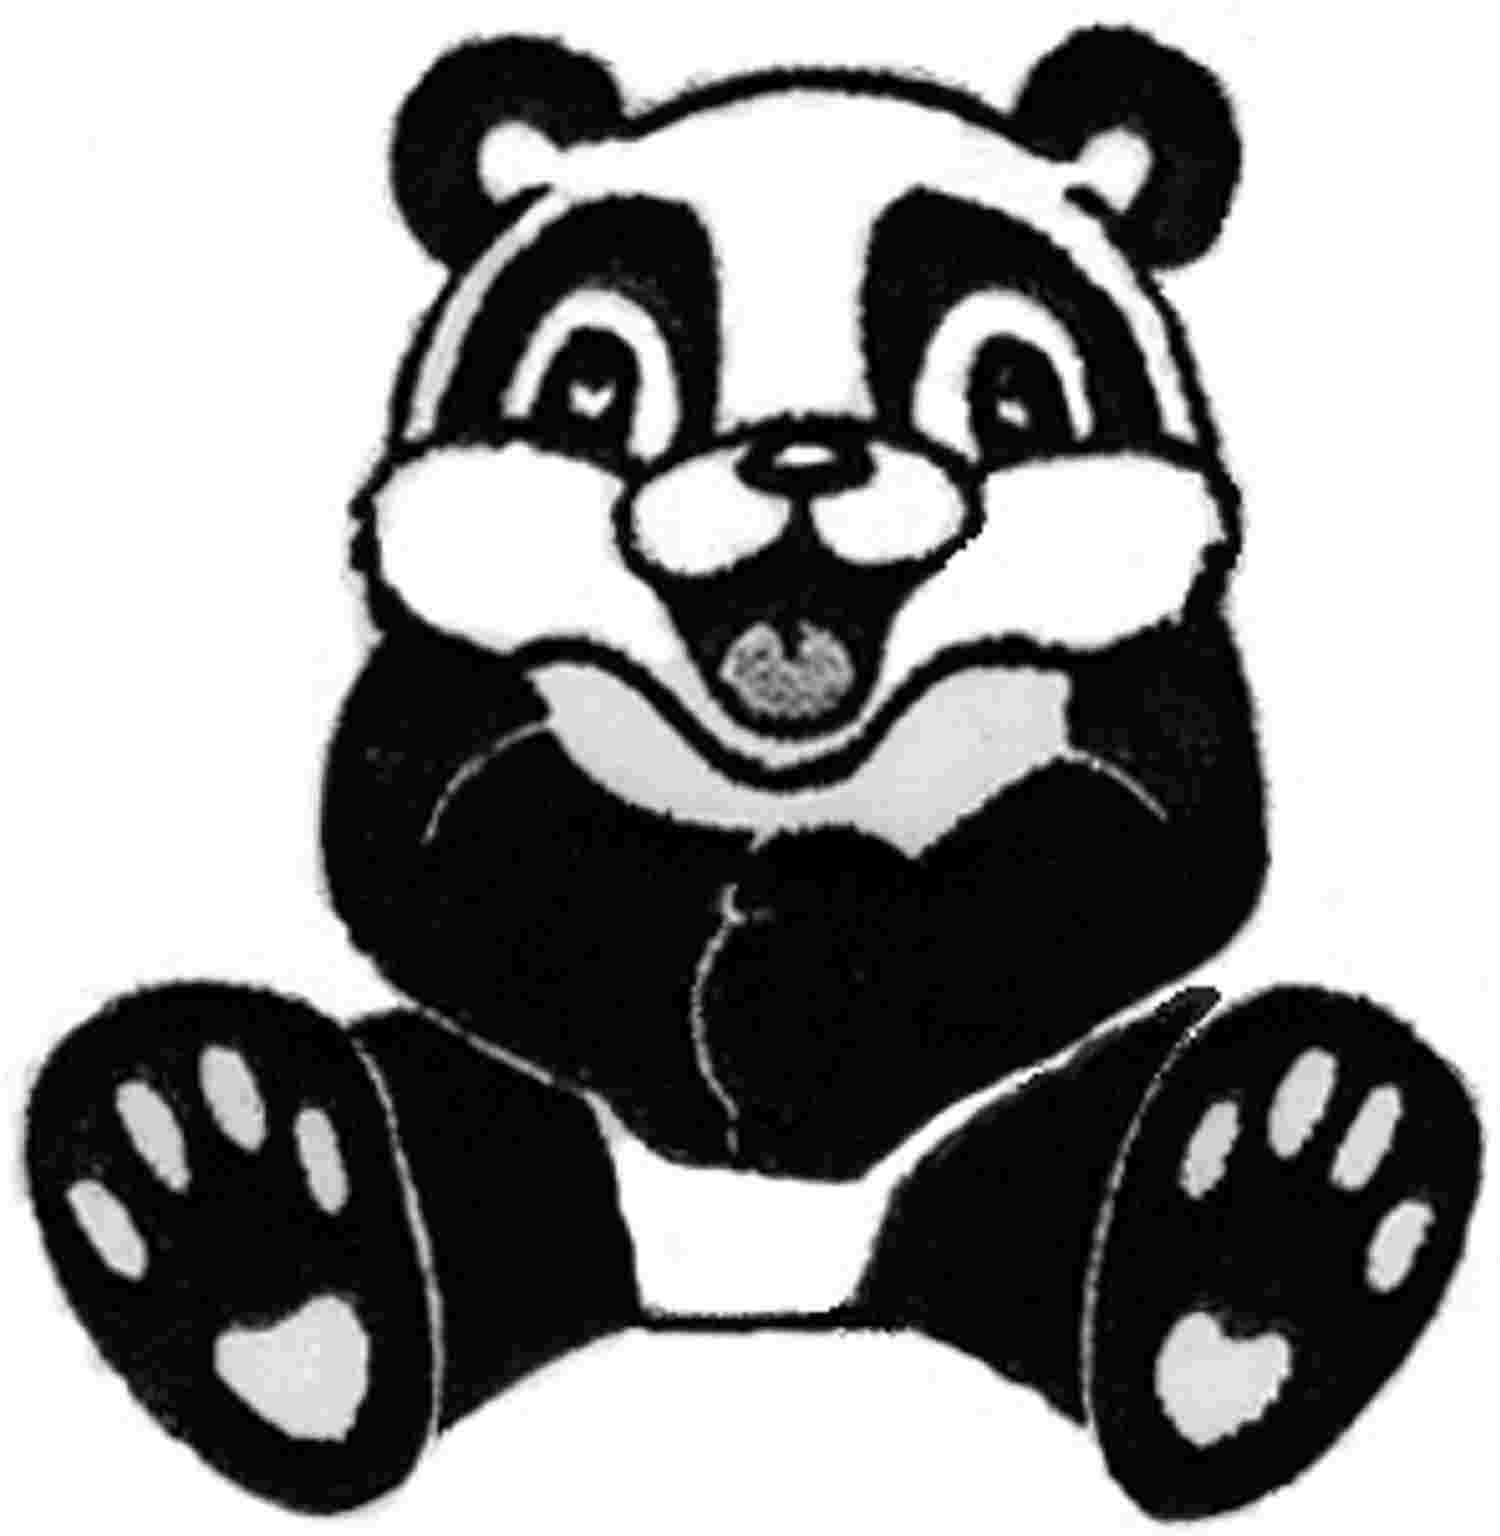 Clinton Grove's Panda